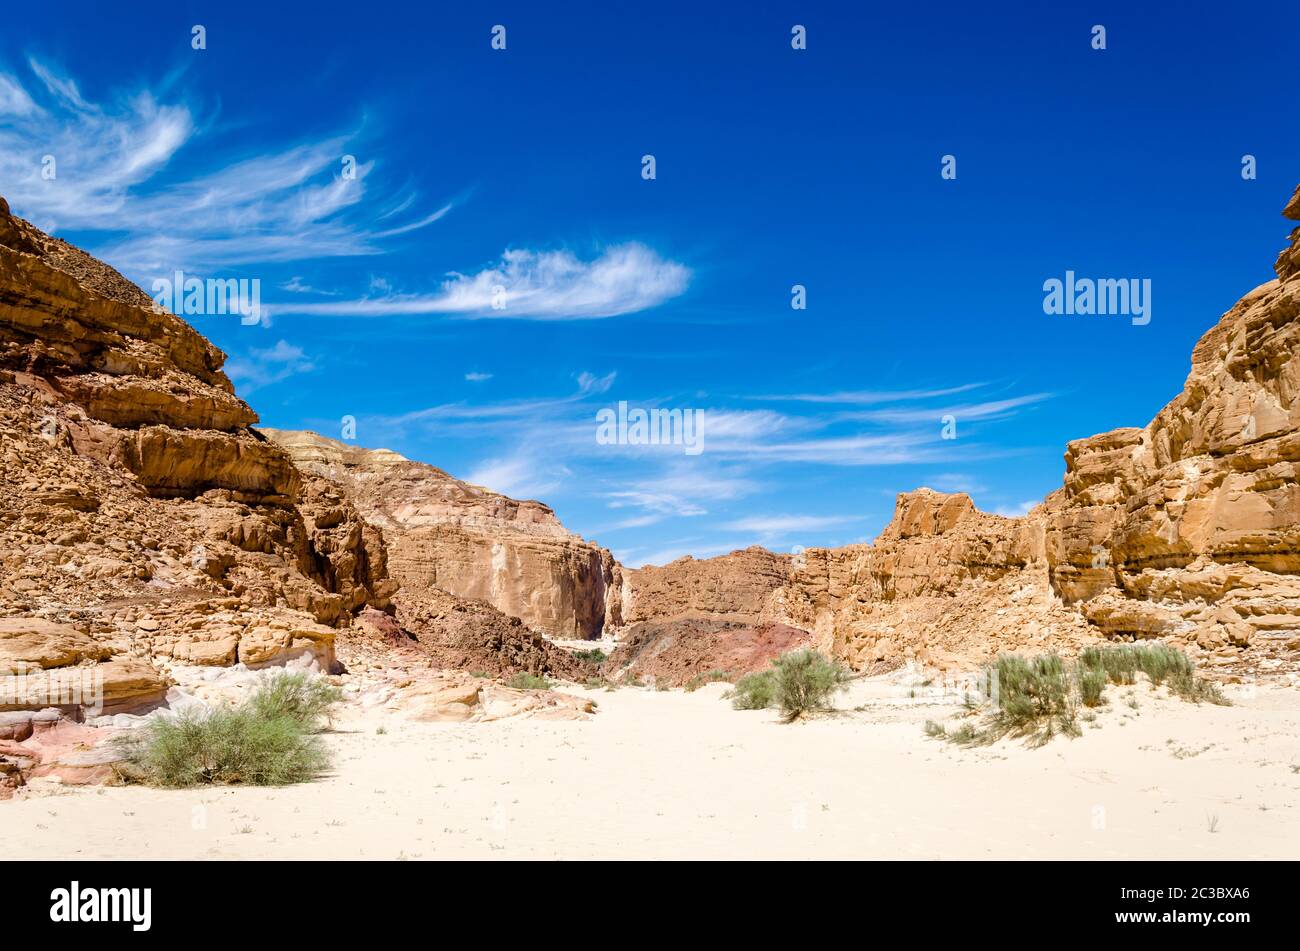 buissons verts sur le sable dans un canyon dans le désert avec la toile de fond des montagnes et un ciel bleu Banque D'Images